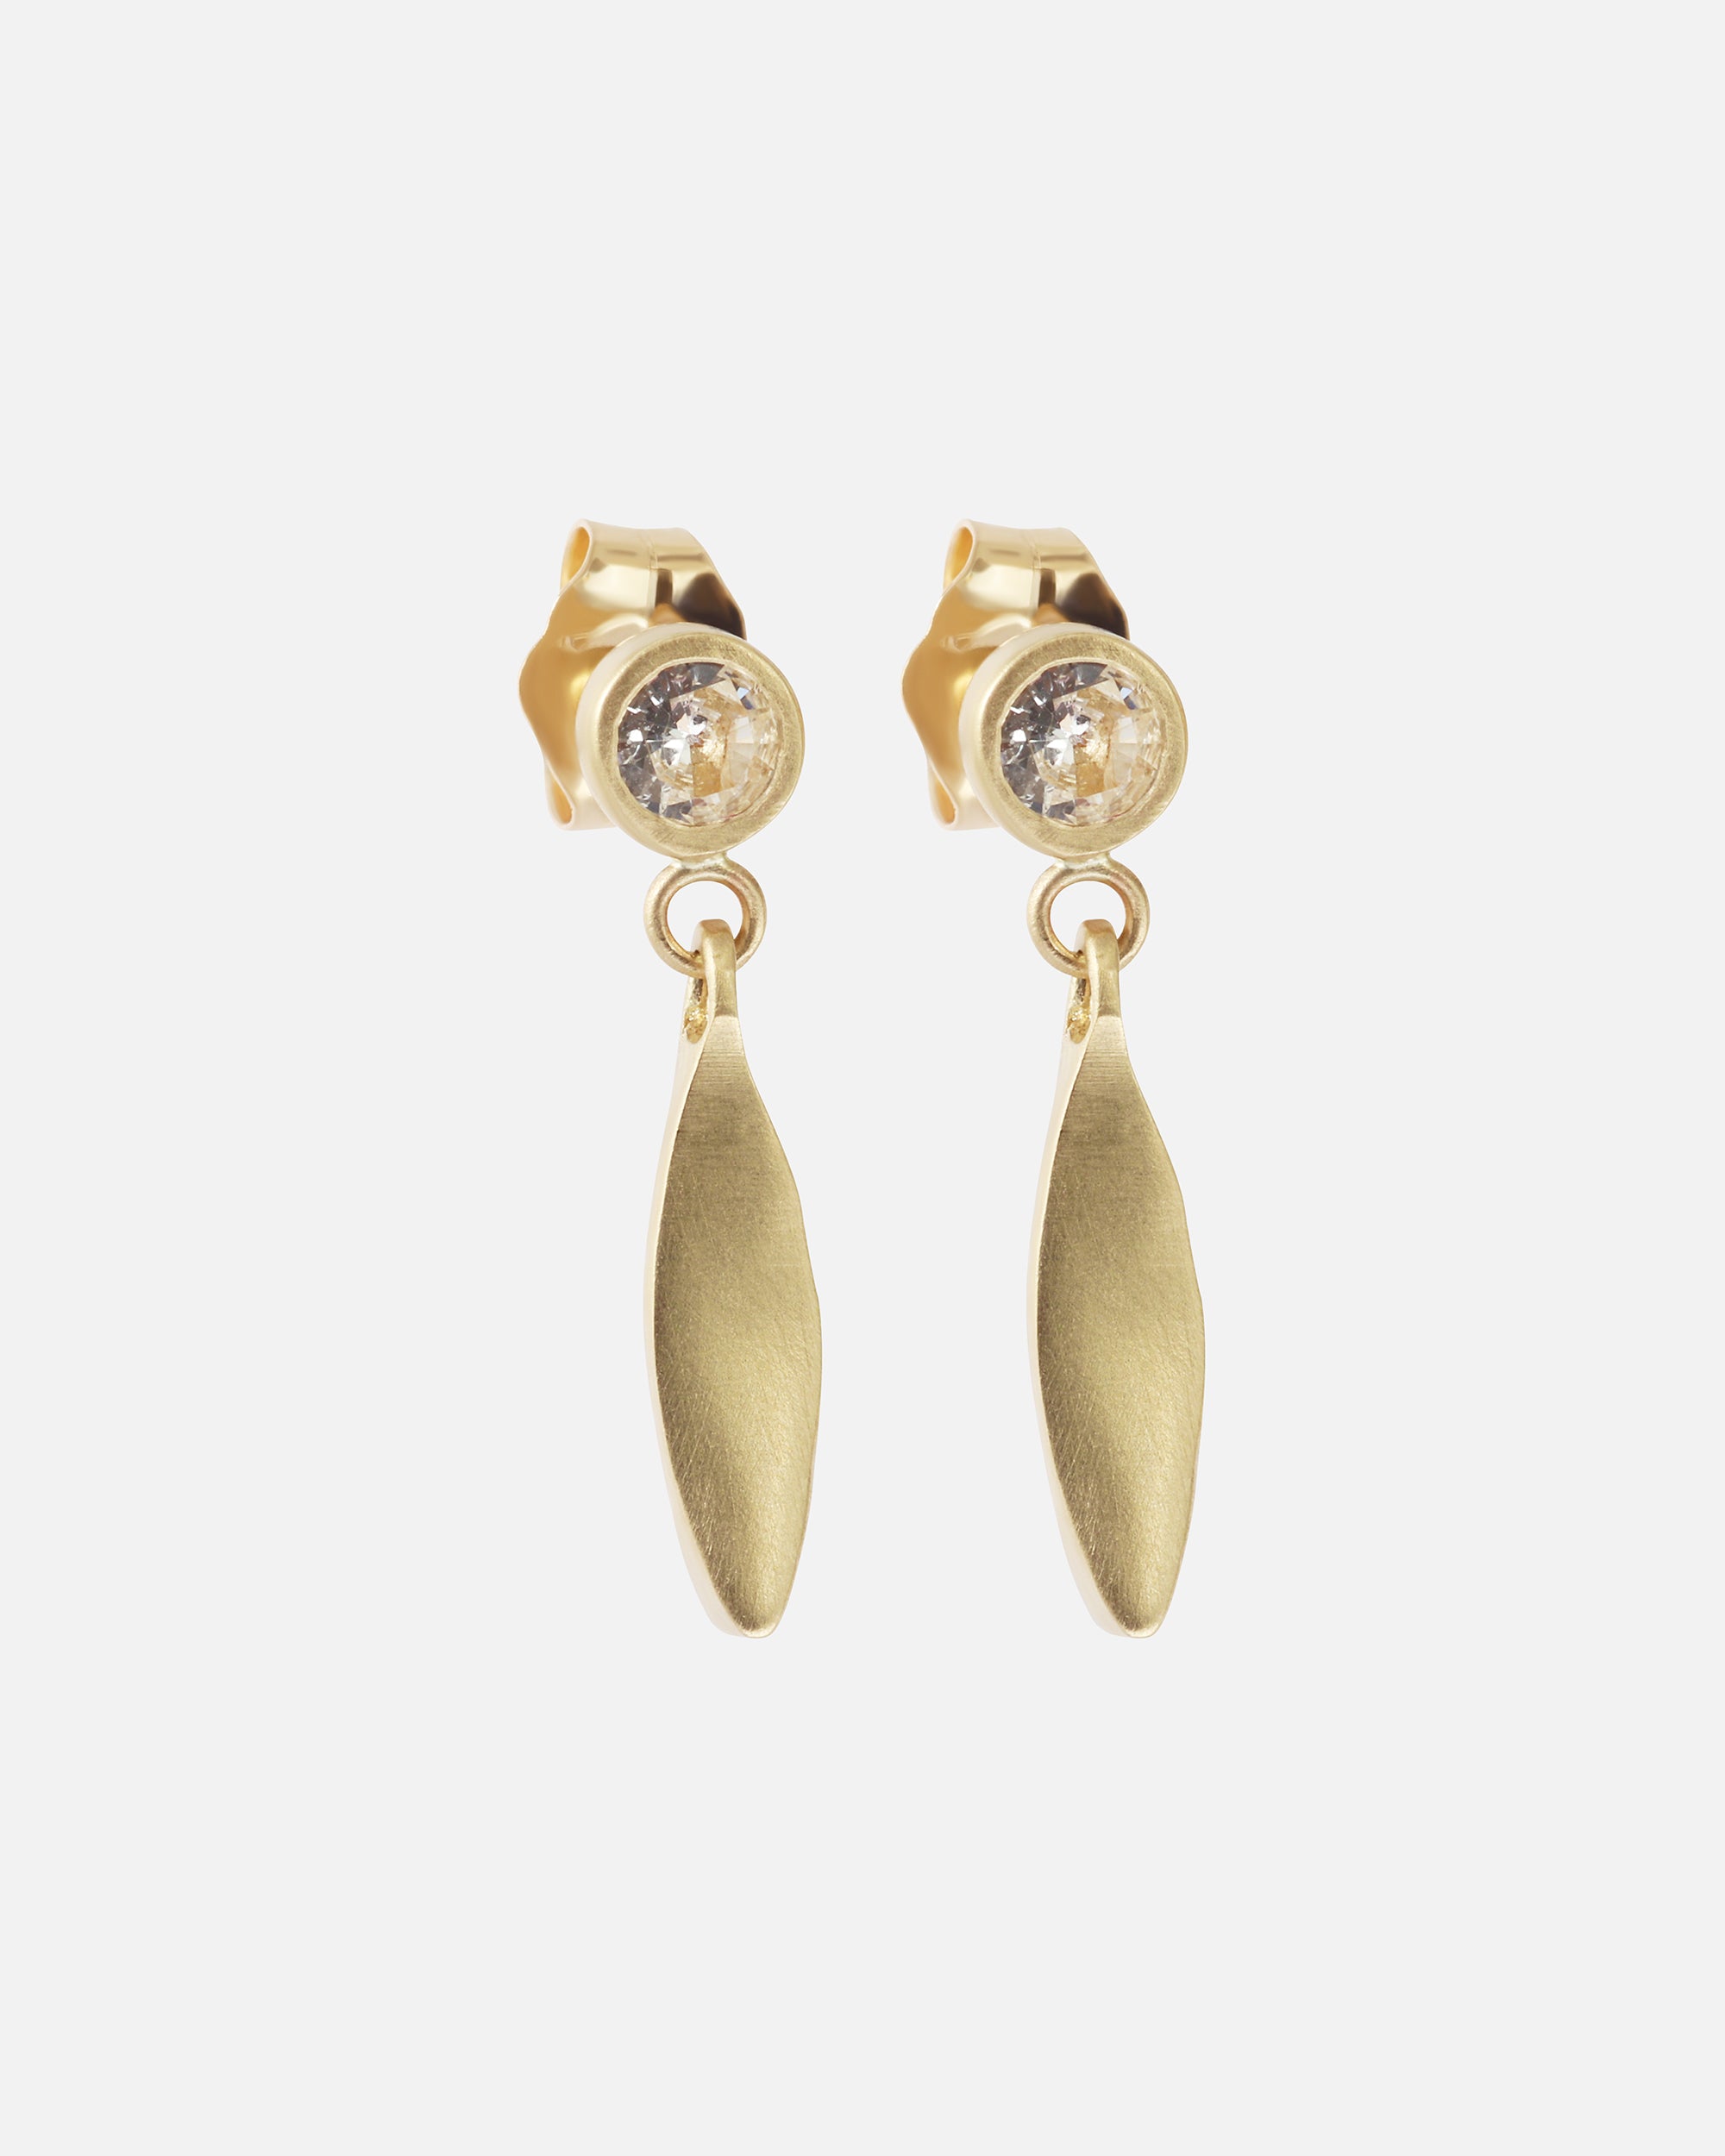 Diamond Leaf / Drop Studs By Tricia Kirkland in earrings Category